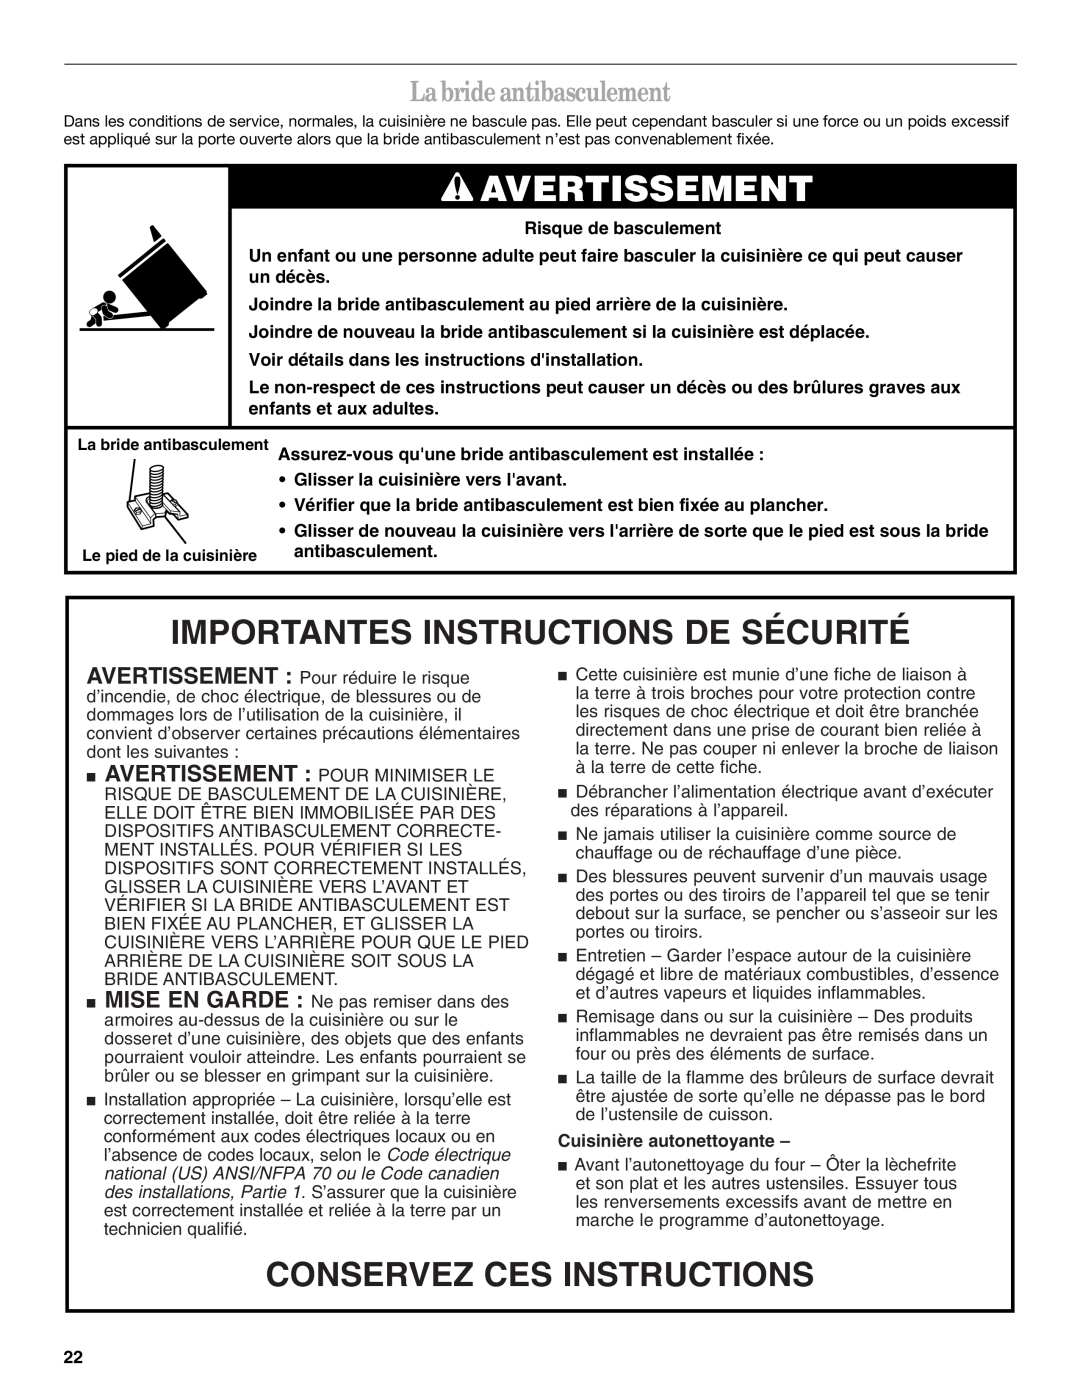 Whirlpool SF378LEPB1 manual Avertissement, Importantes Instructions De Sécurité, Conservez Ces Instructions 